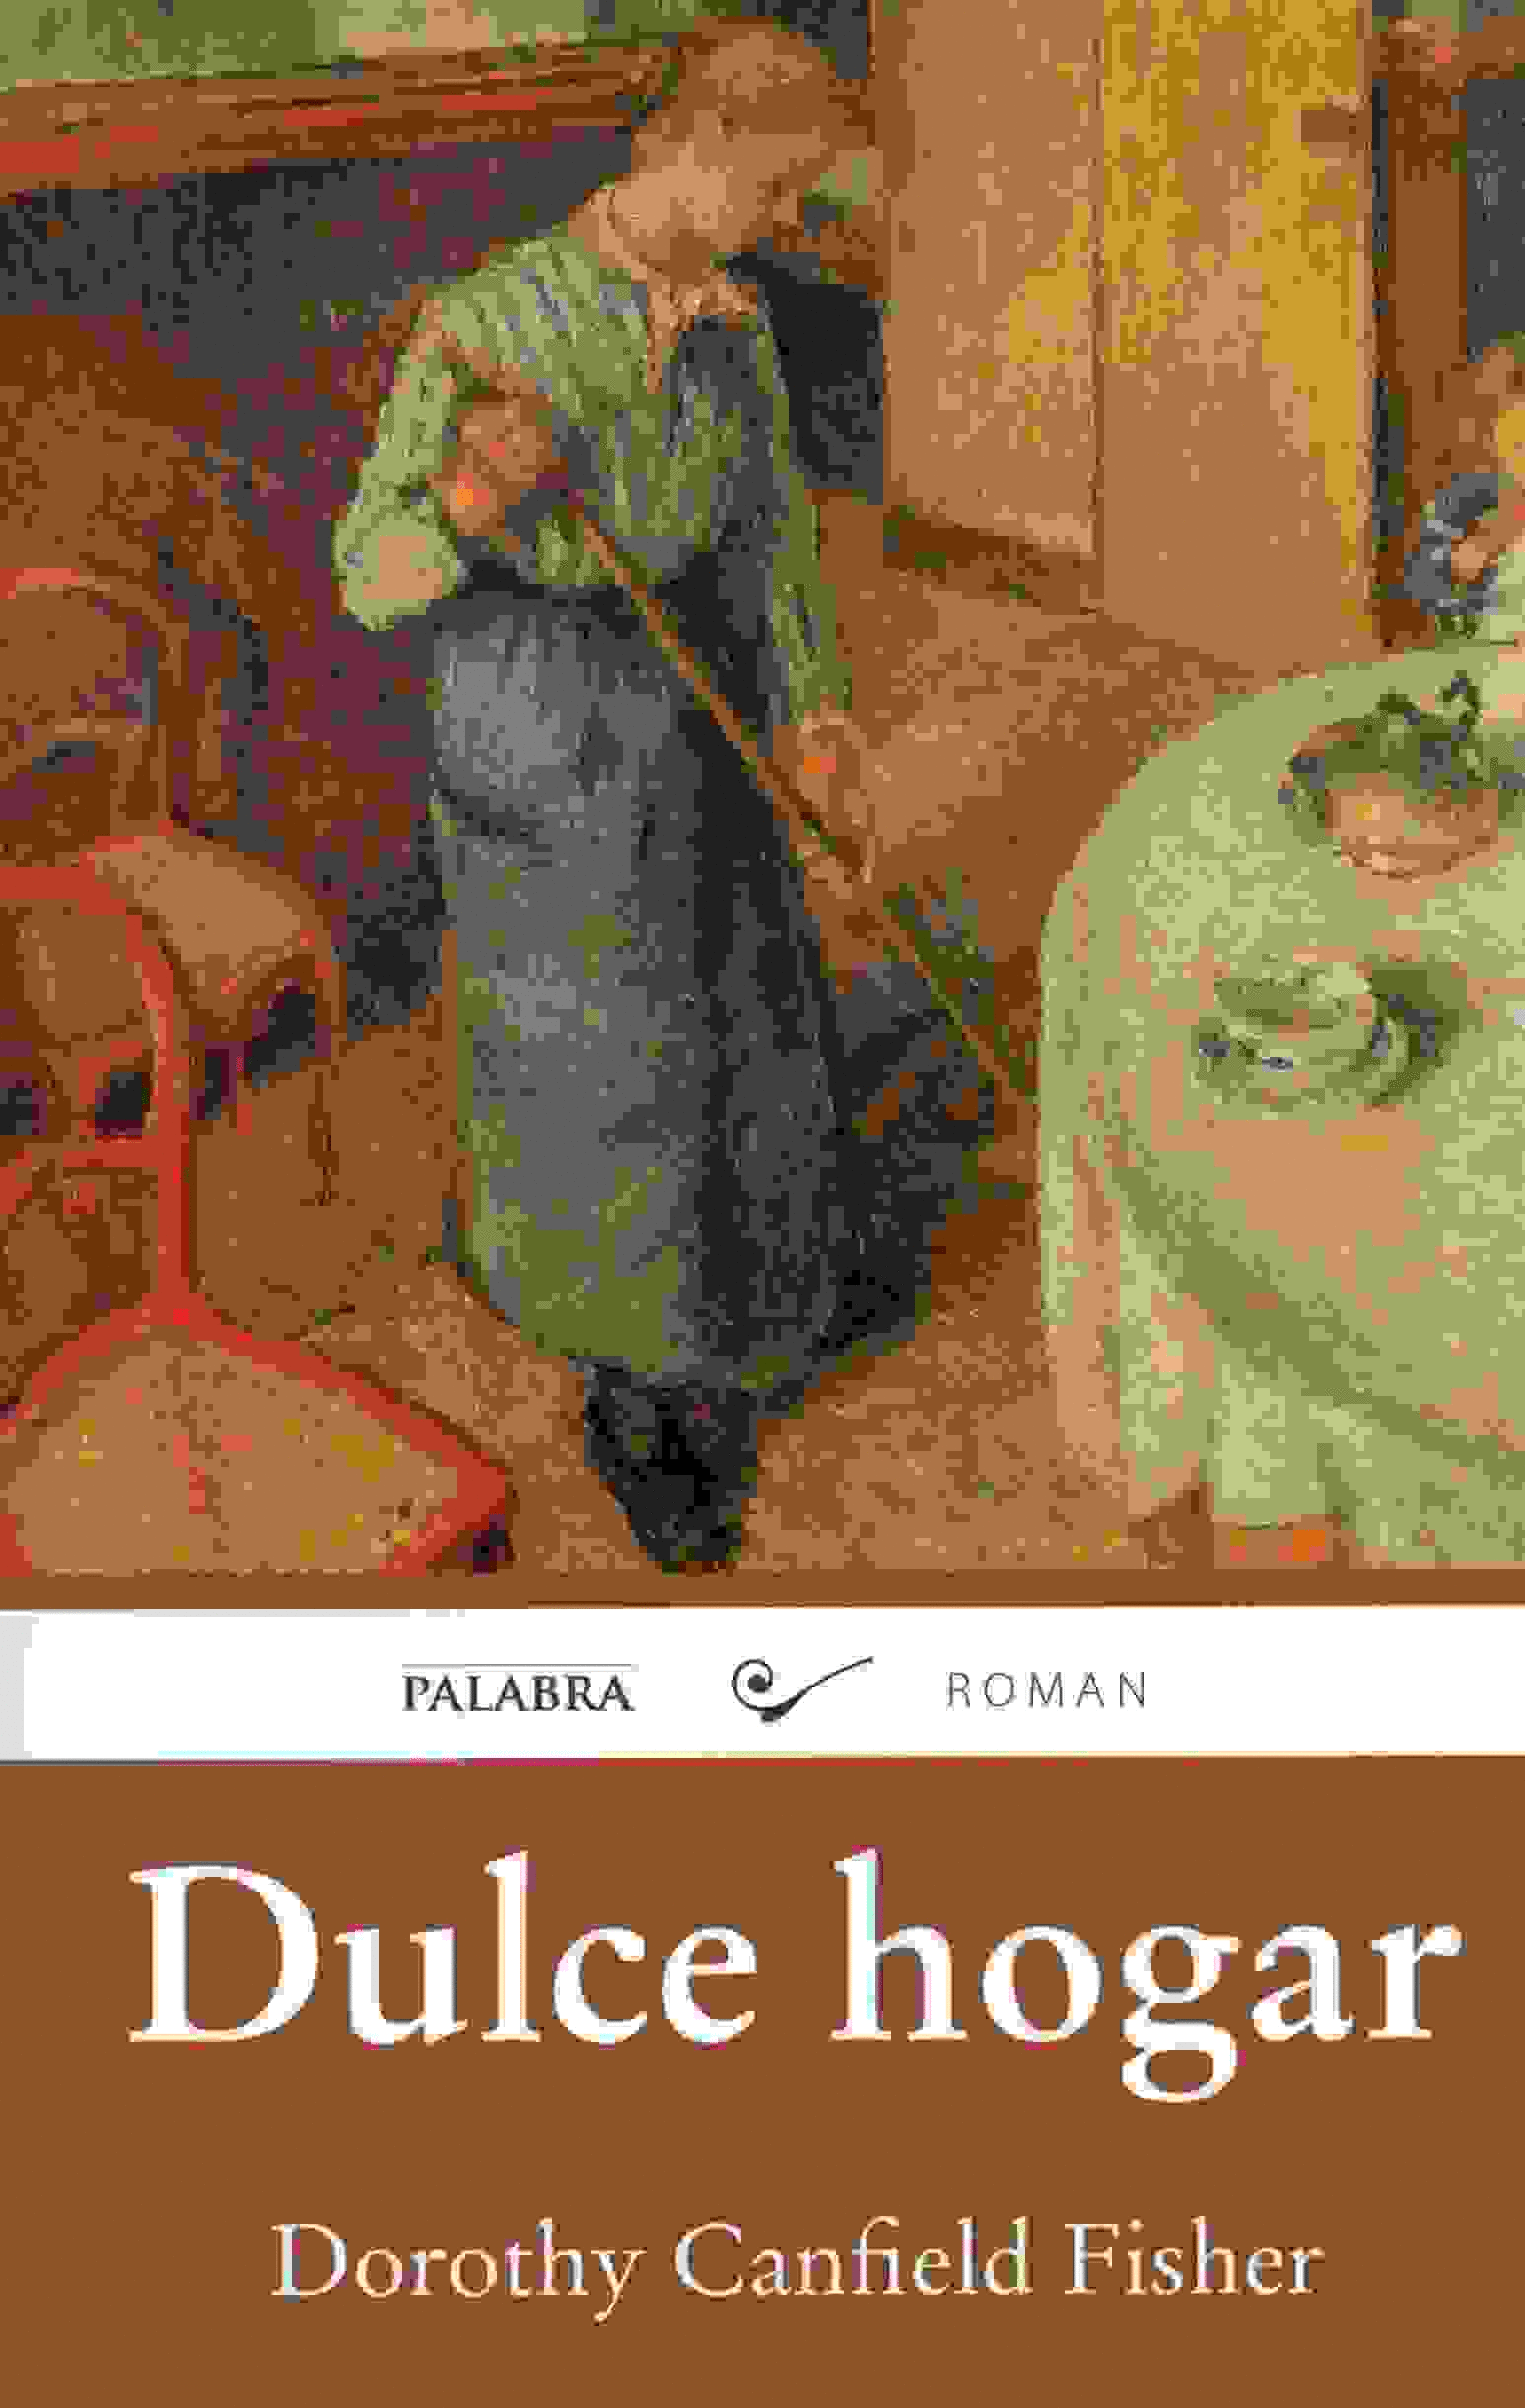 DULCE HOGAR